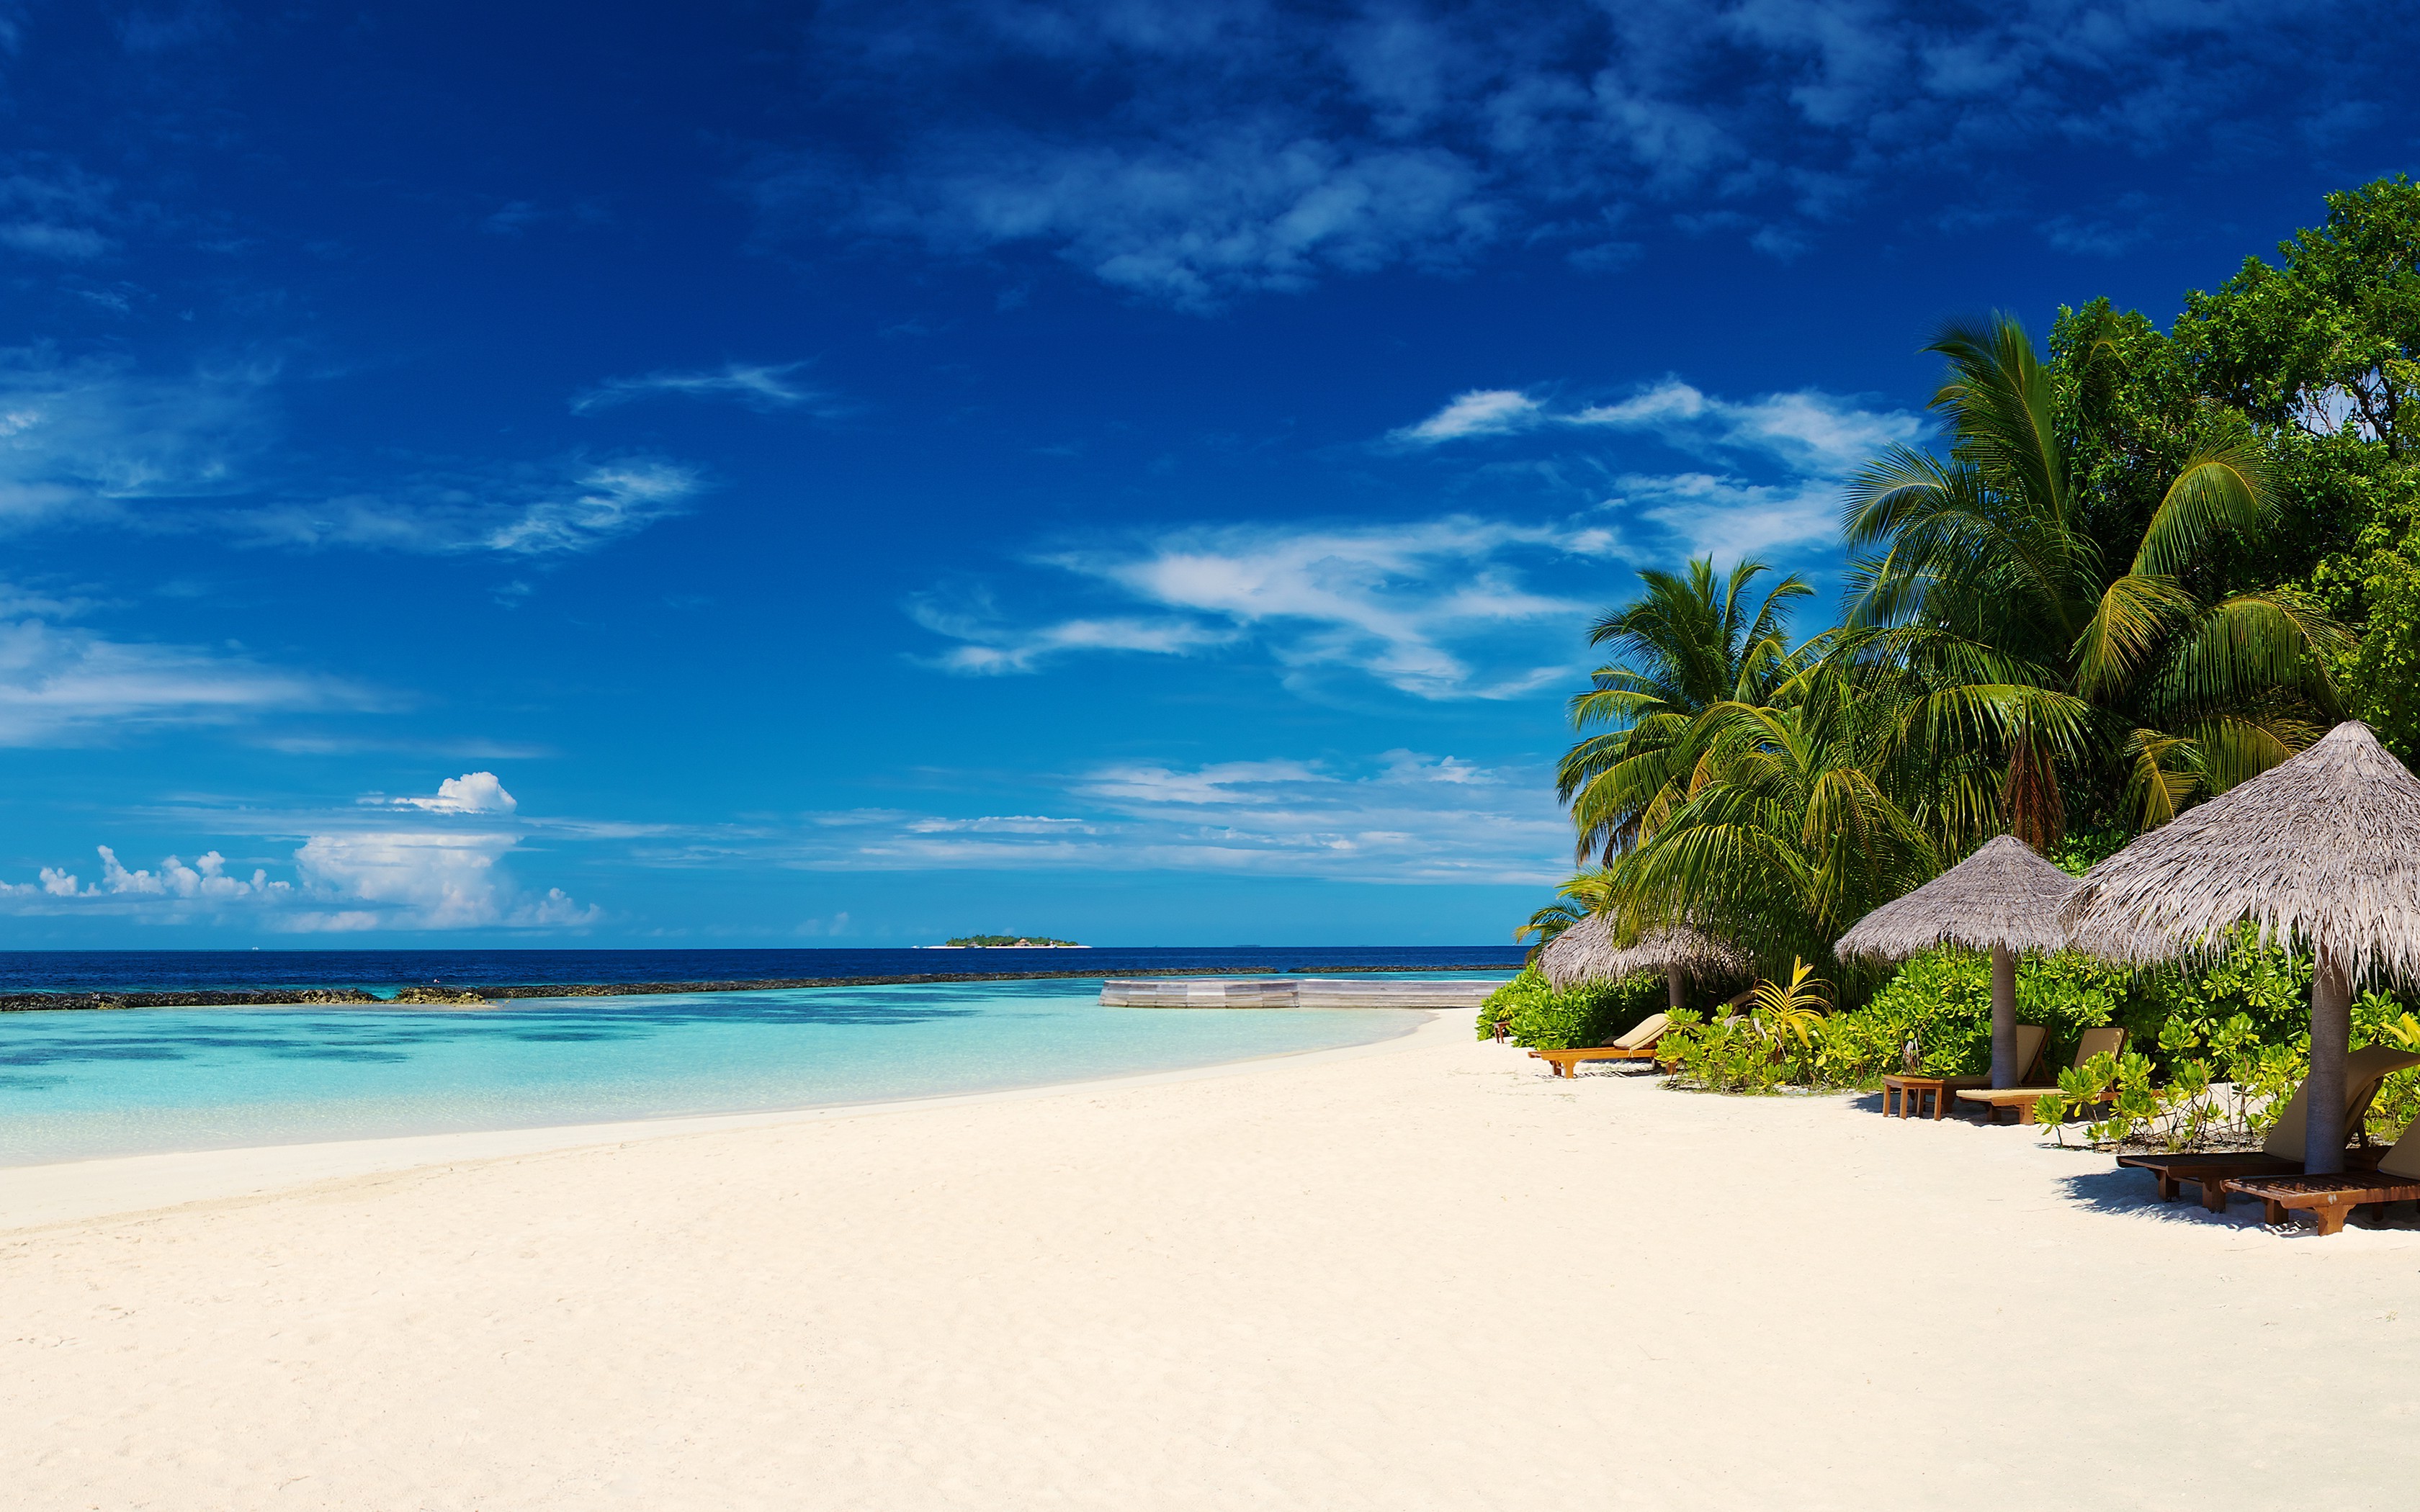 Скачать обои бесплатно Пляж, Пальмы, Океан, Праздник, Синий, Земля, Тропический, Мальдивы, Фотографии картинка на рабочий стол ПК